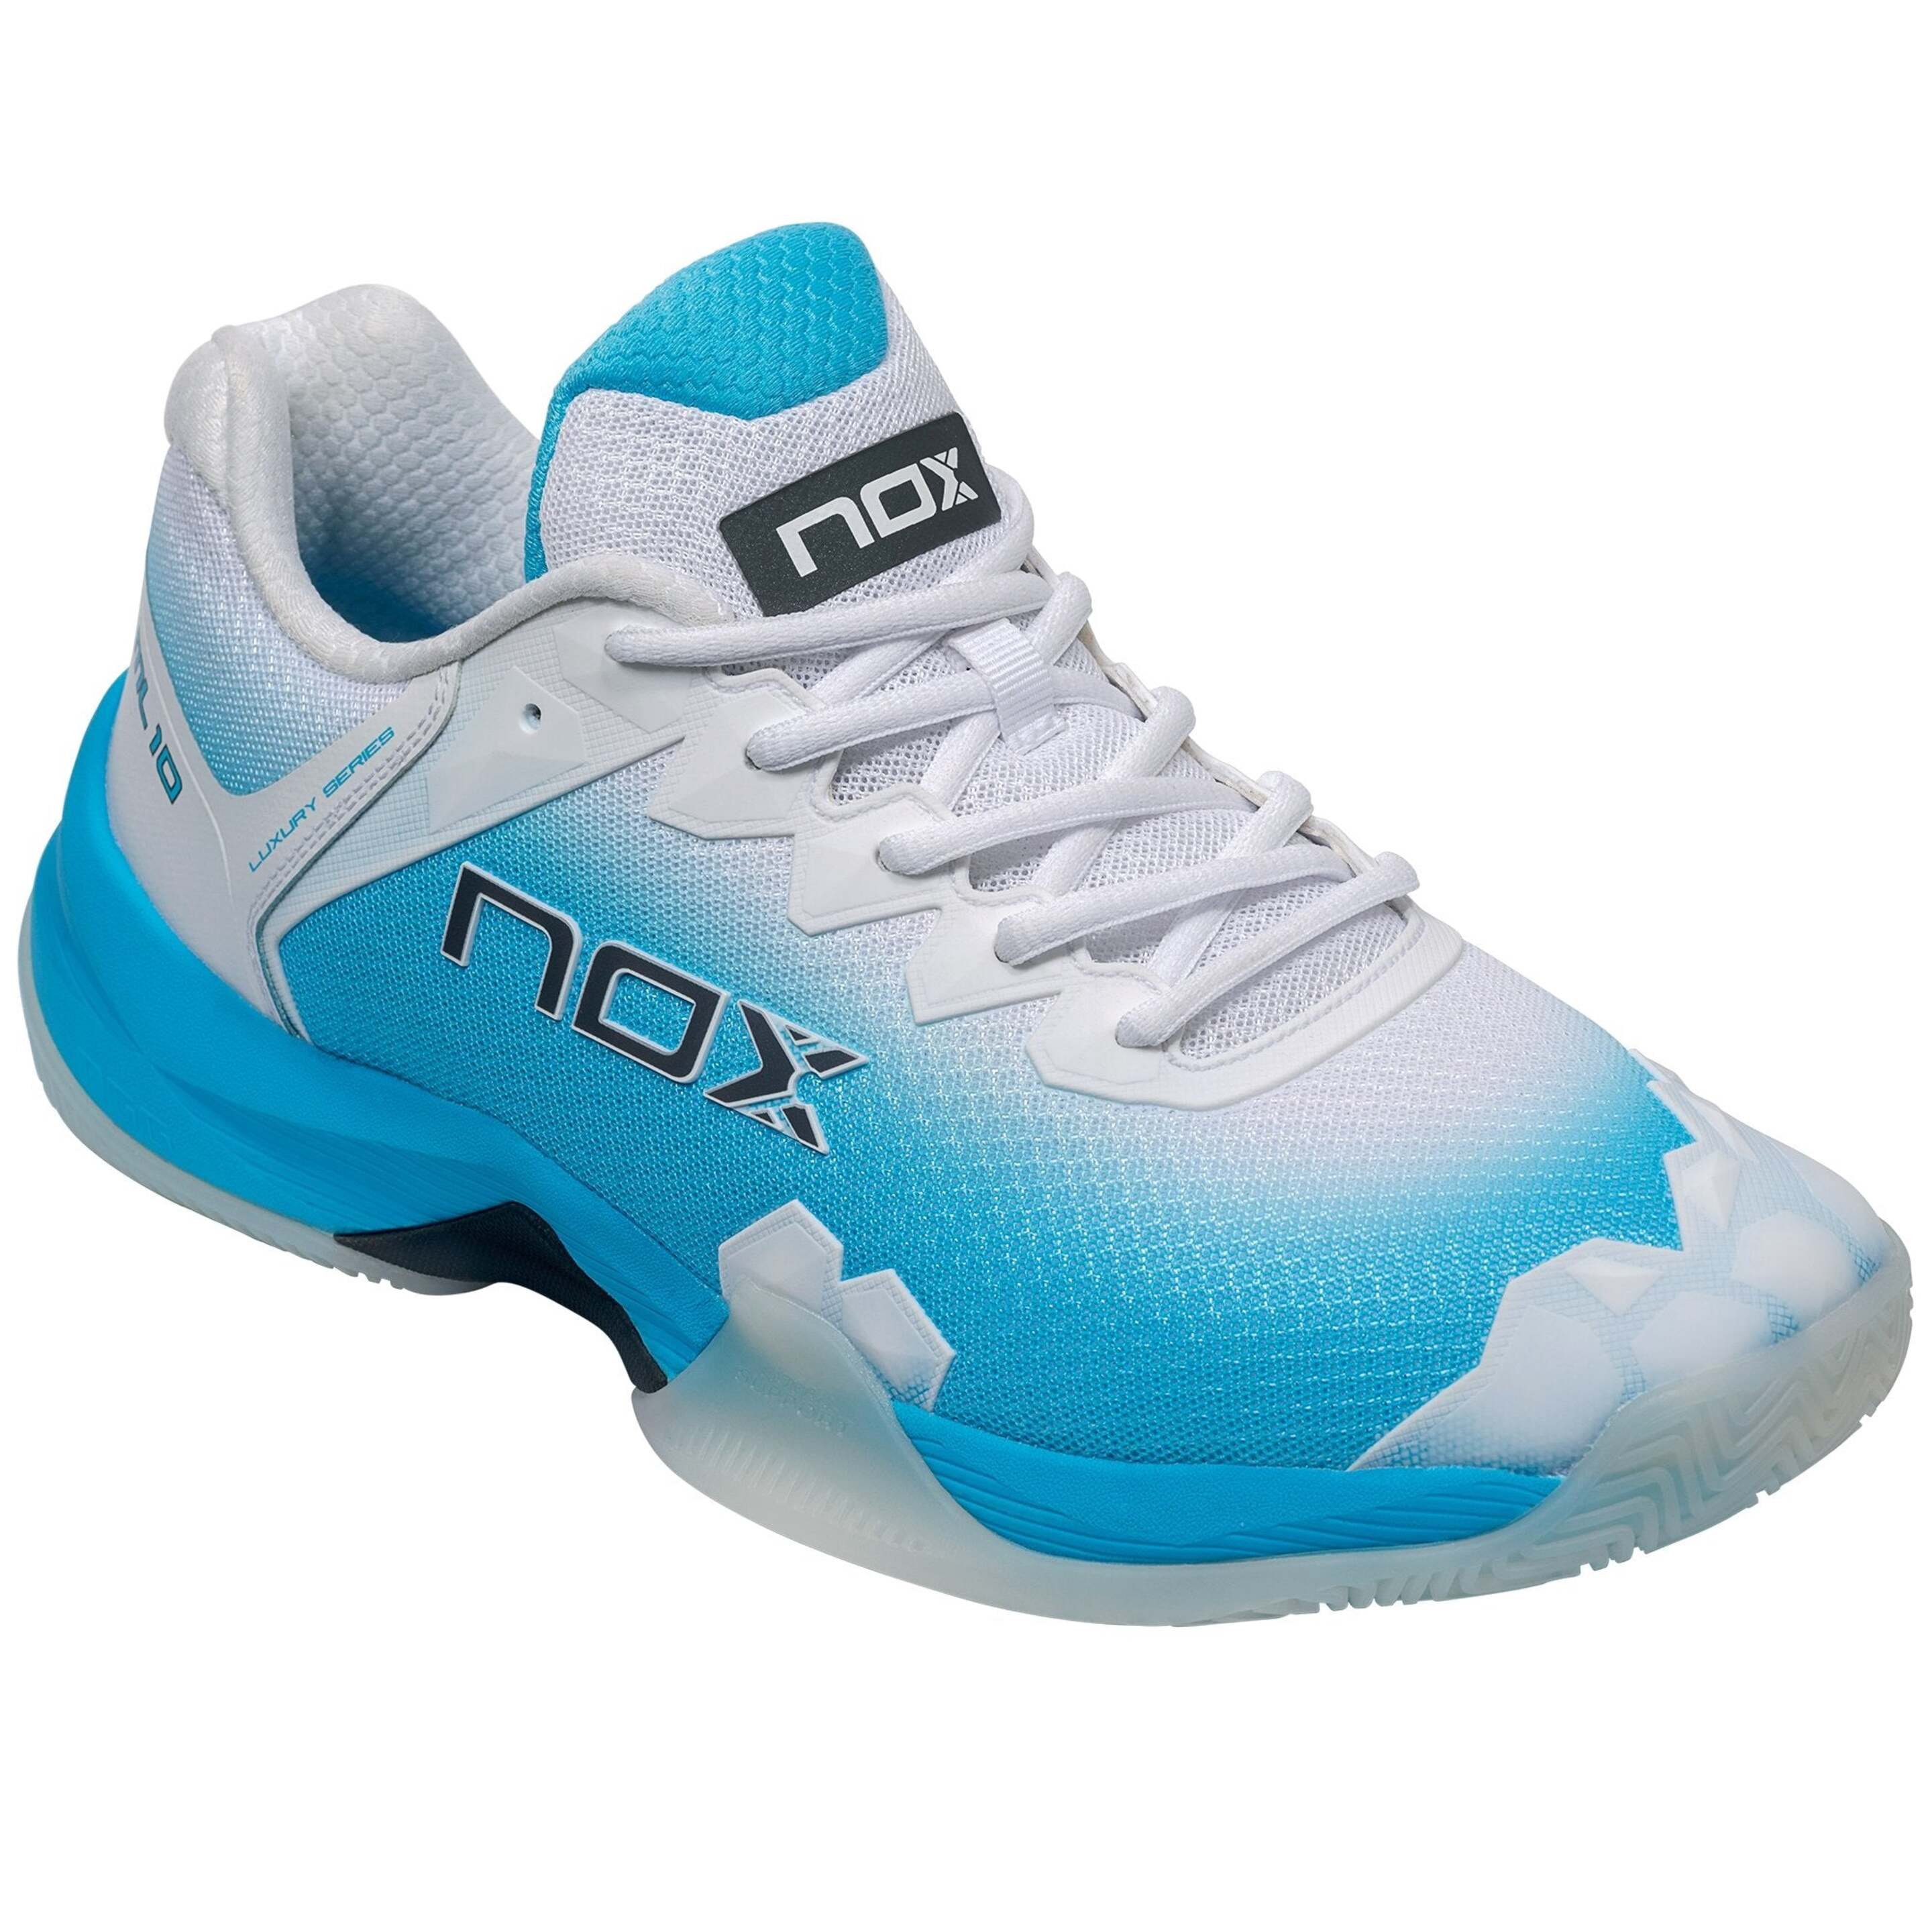 Zapatillas De Pádel Nox Ml10 Hexa - Blanco/Azul  MKP